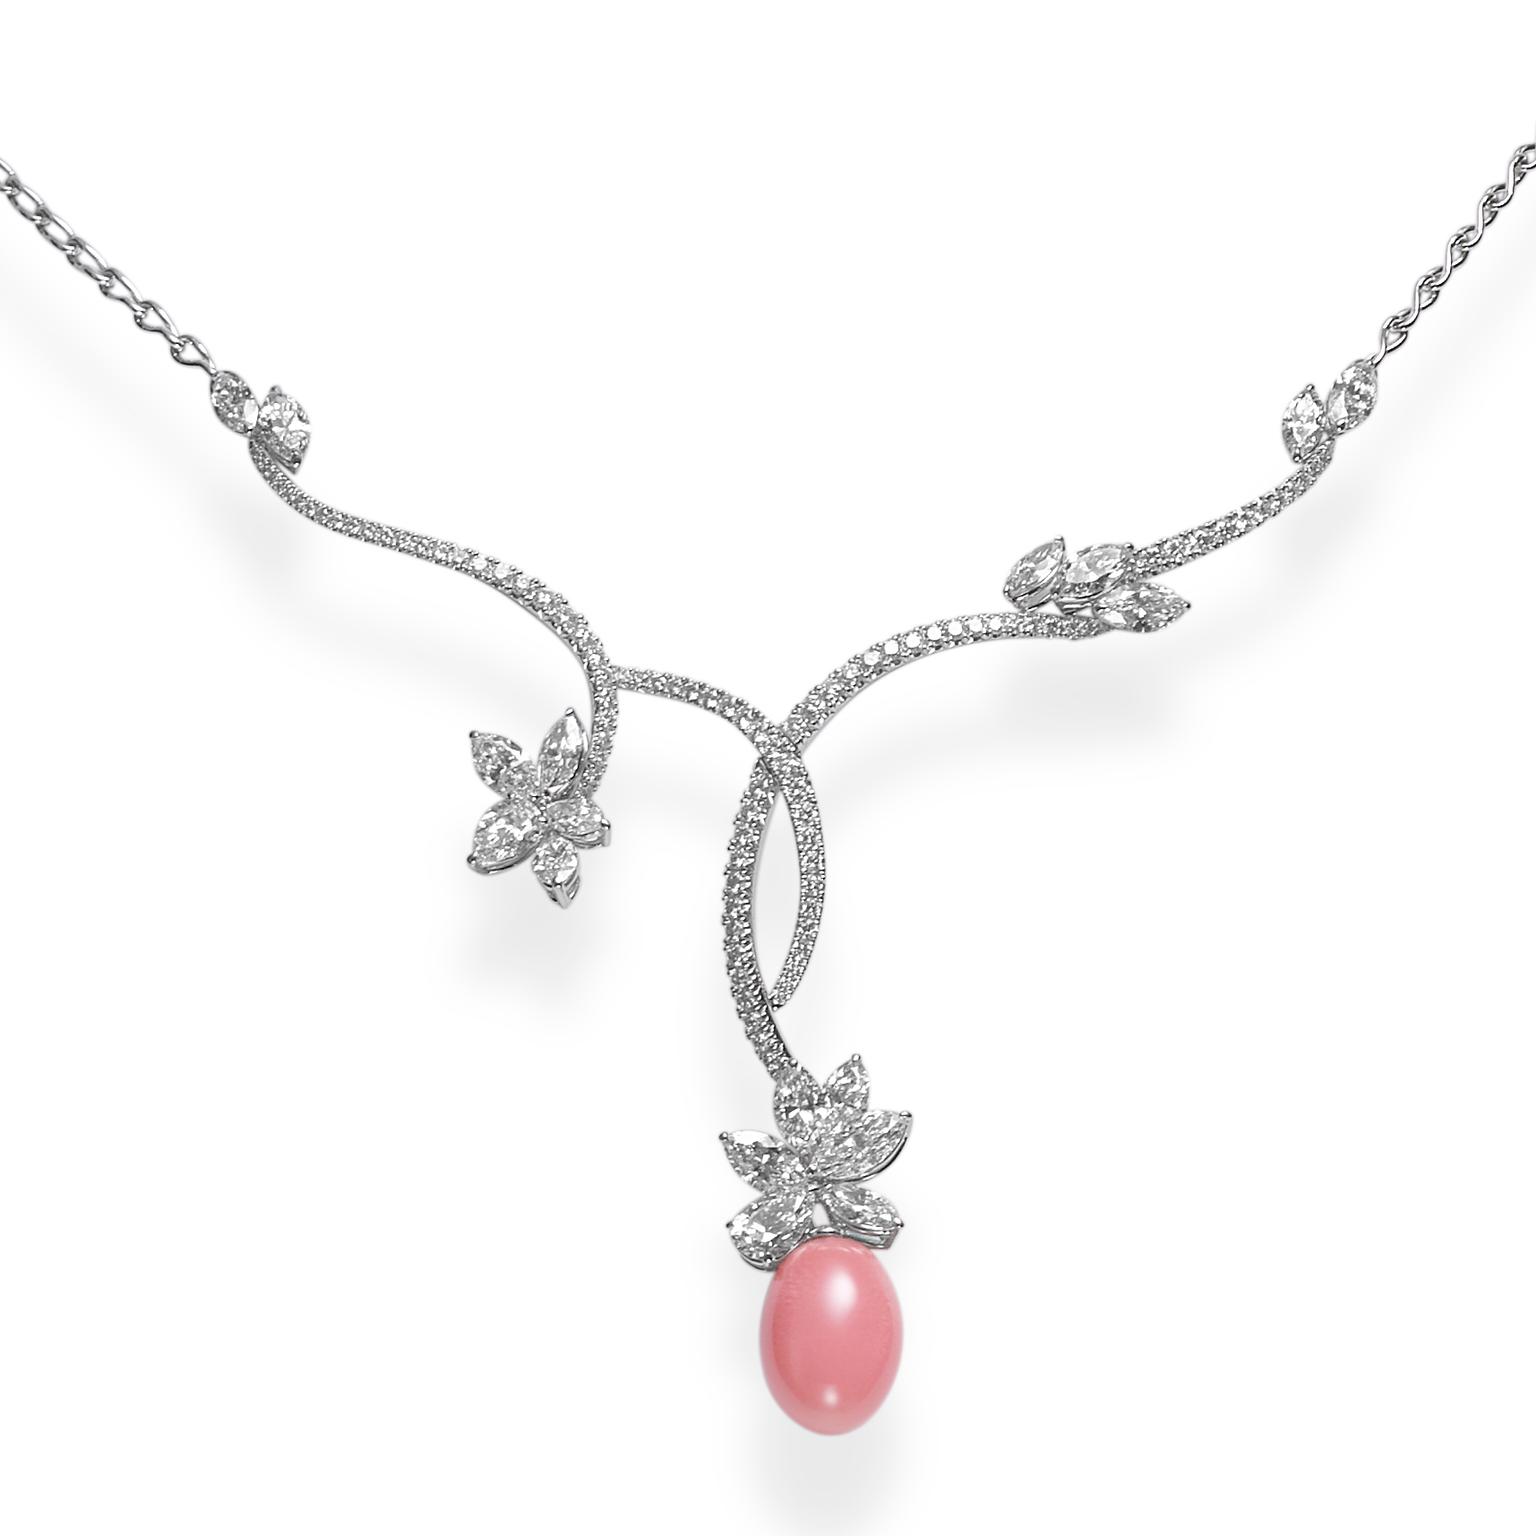 Mikimoto conch pearl necklace